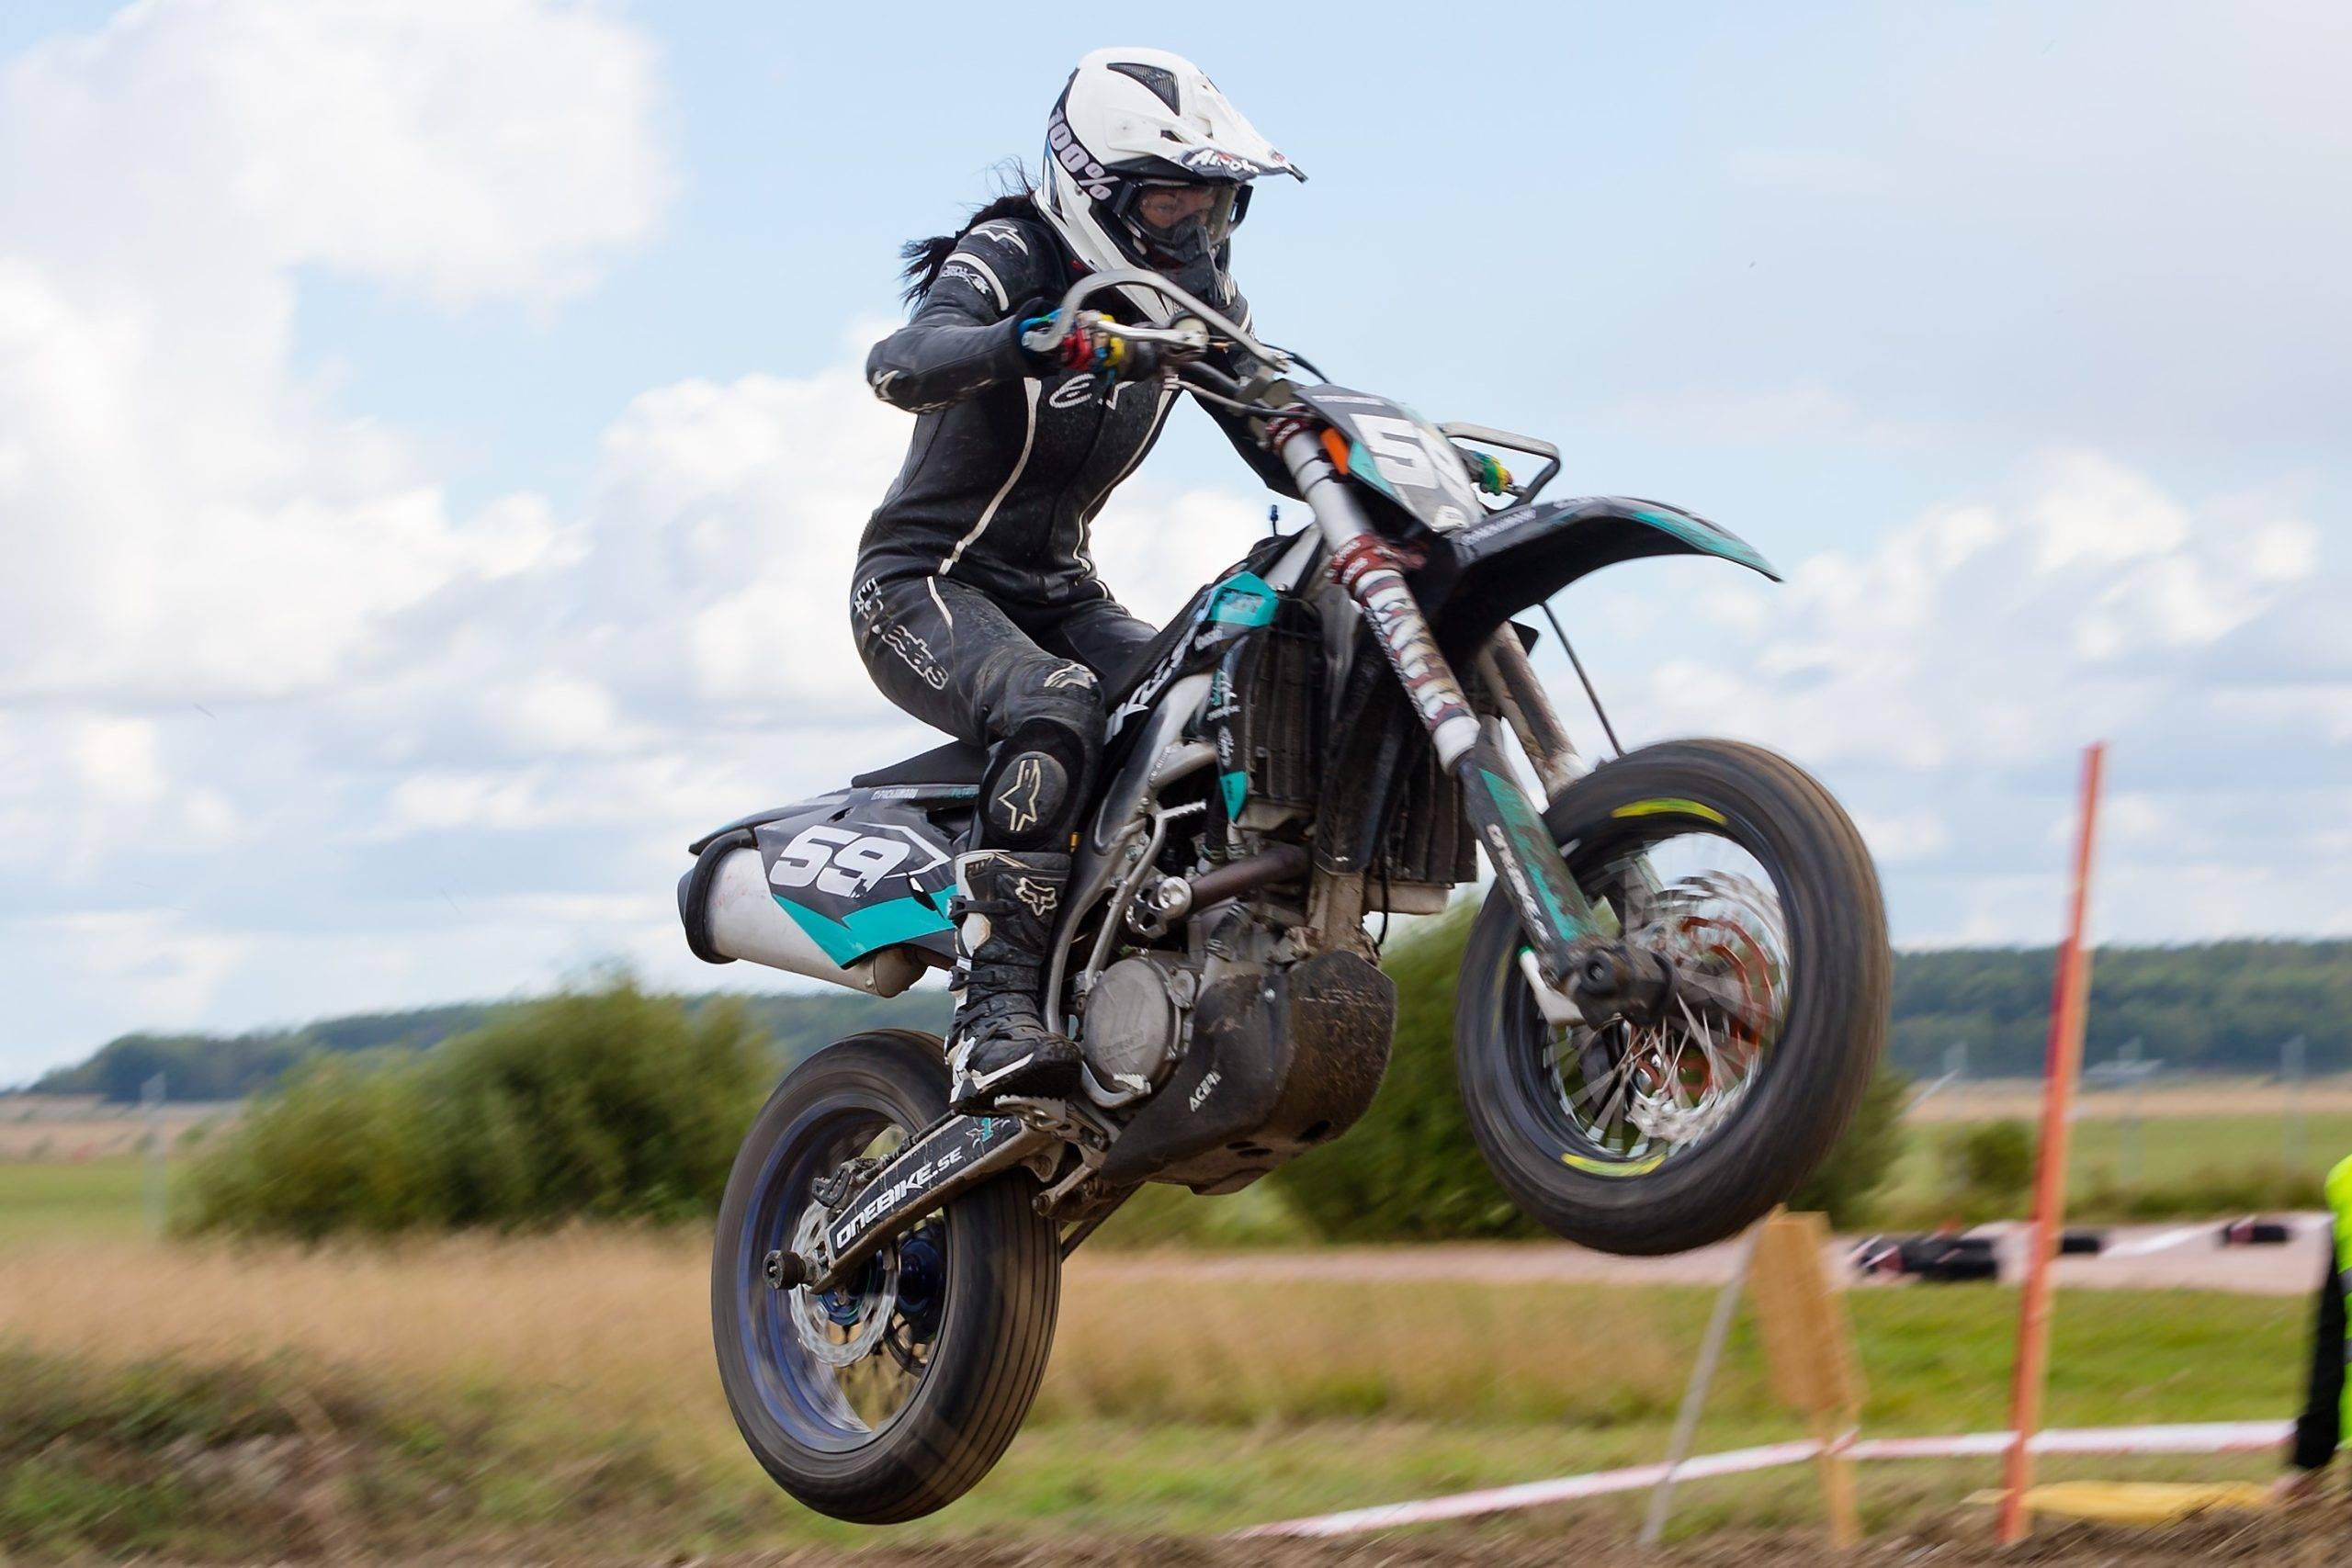 Kvinnlig förare hoppar med motorcykeln i supermoto